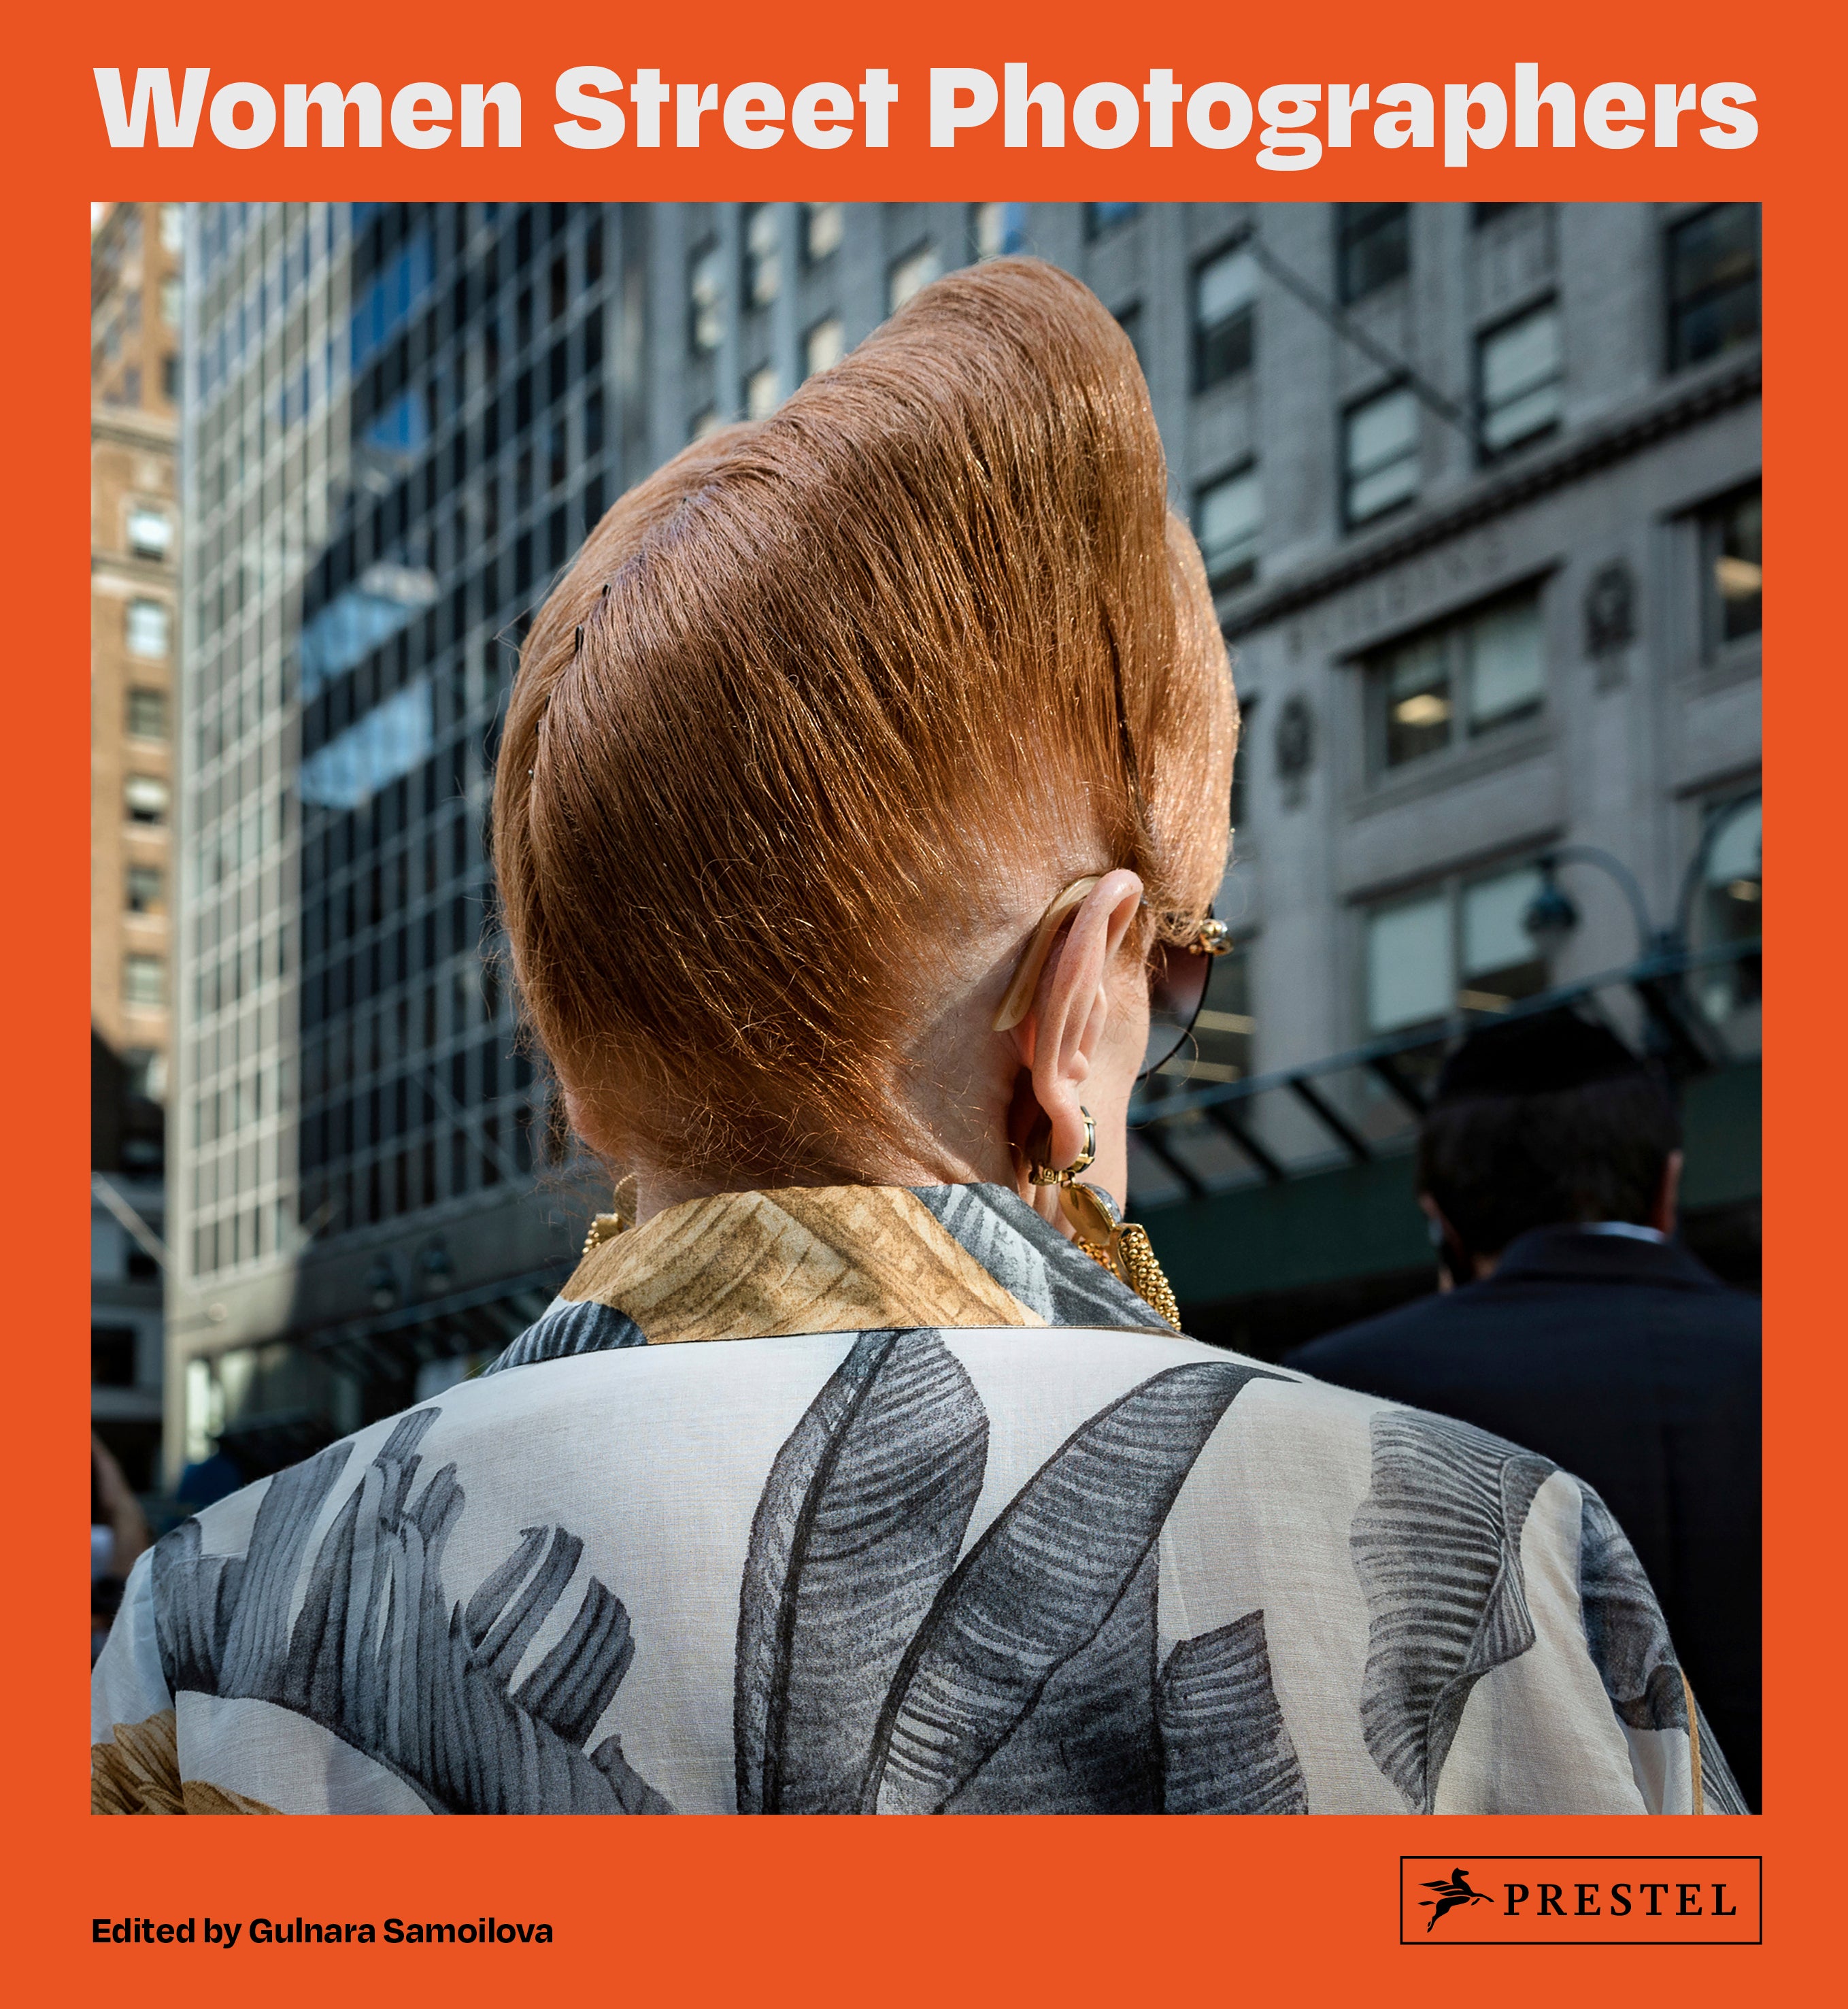 Book Review - Women Street Photographers